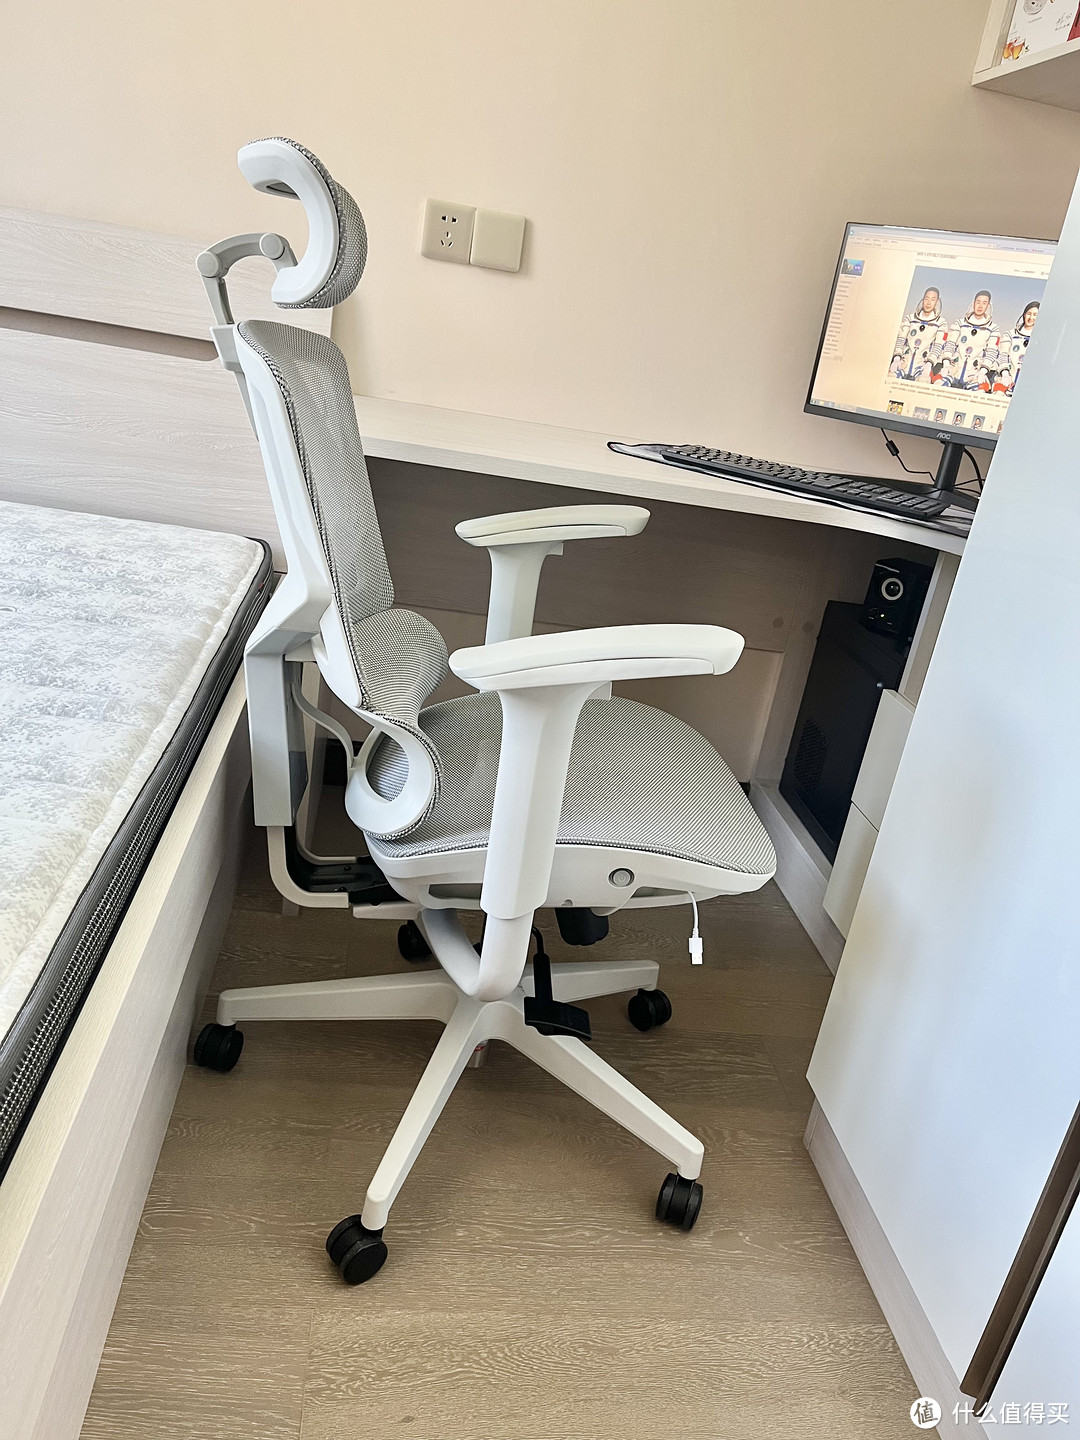 小空间也能从容使用的西昊 Vito S版人体工程学座椅